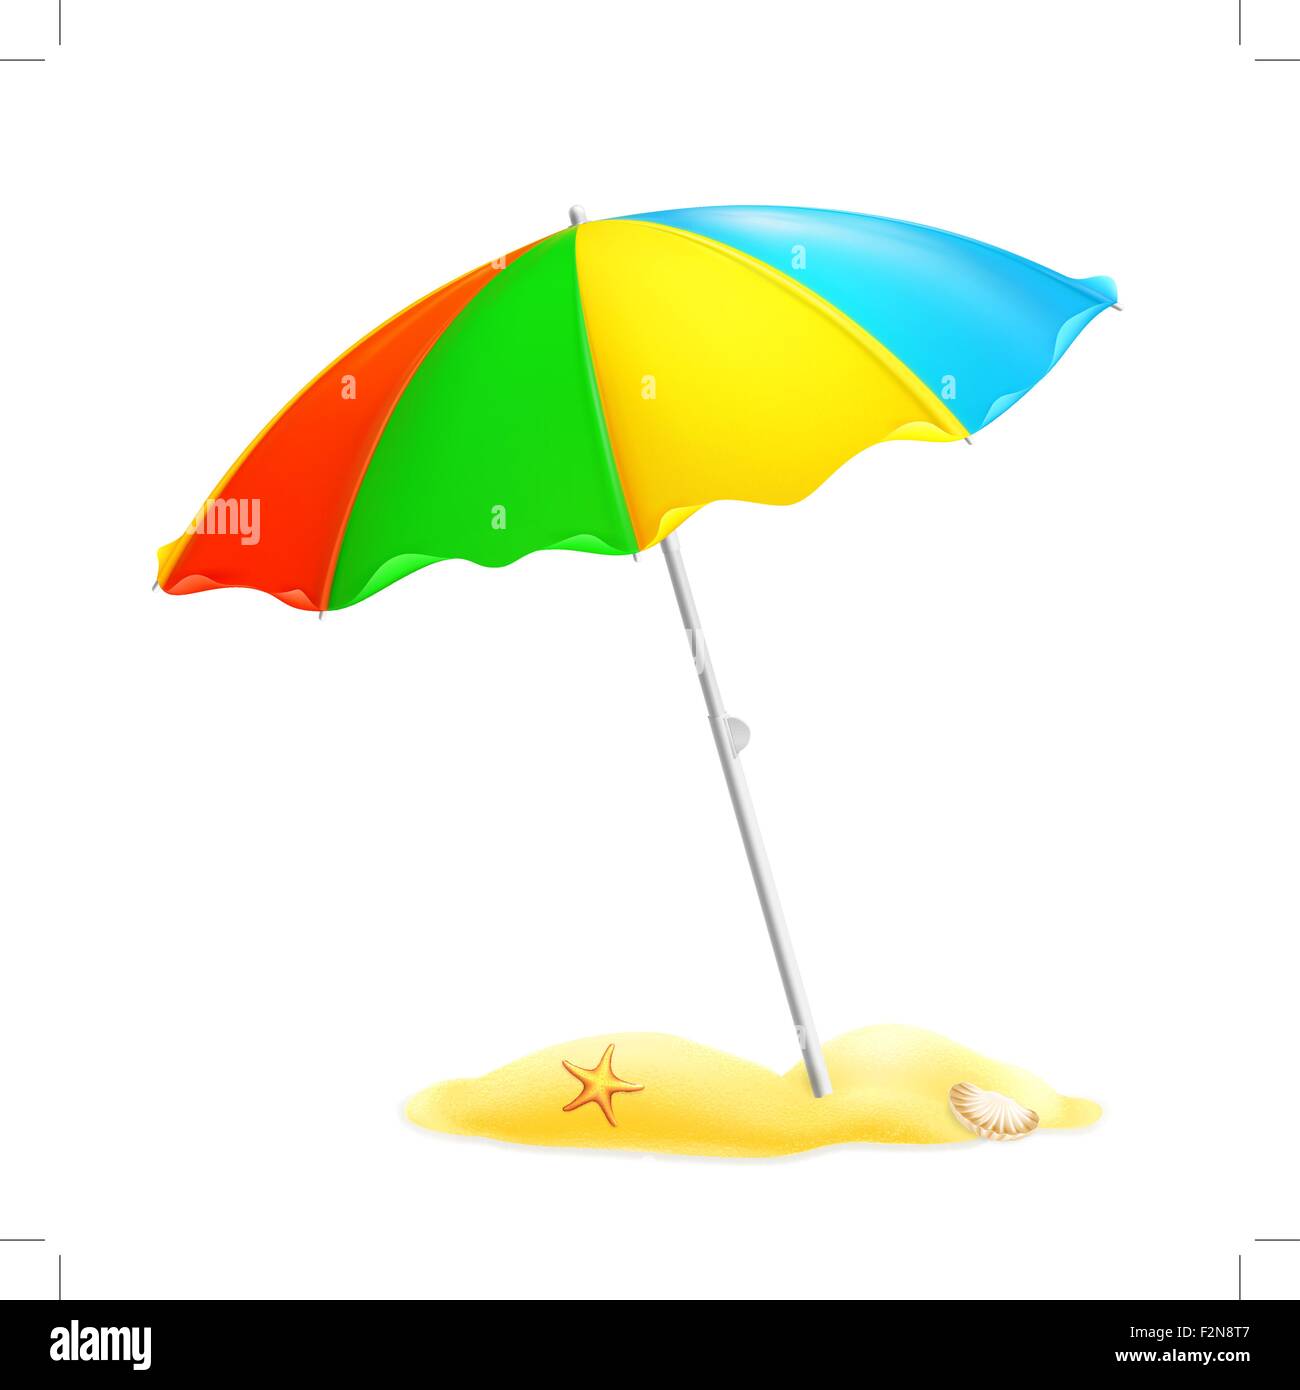 Пляжный зонт рисунок для детей